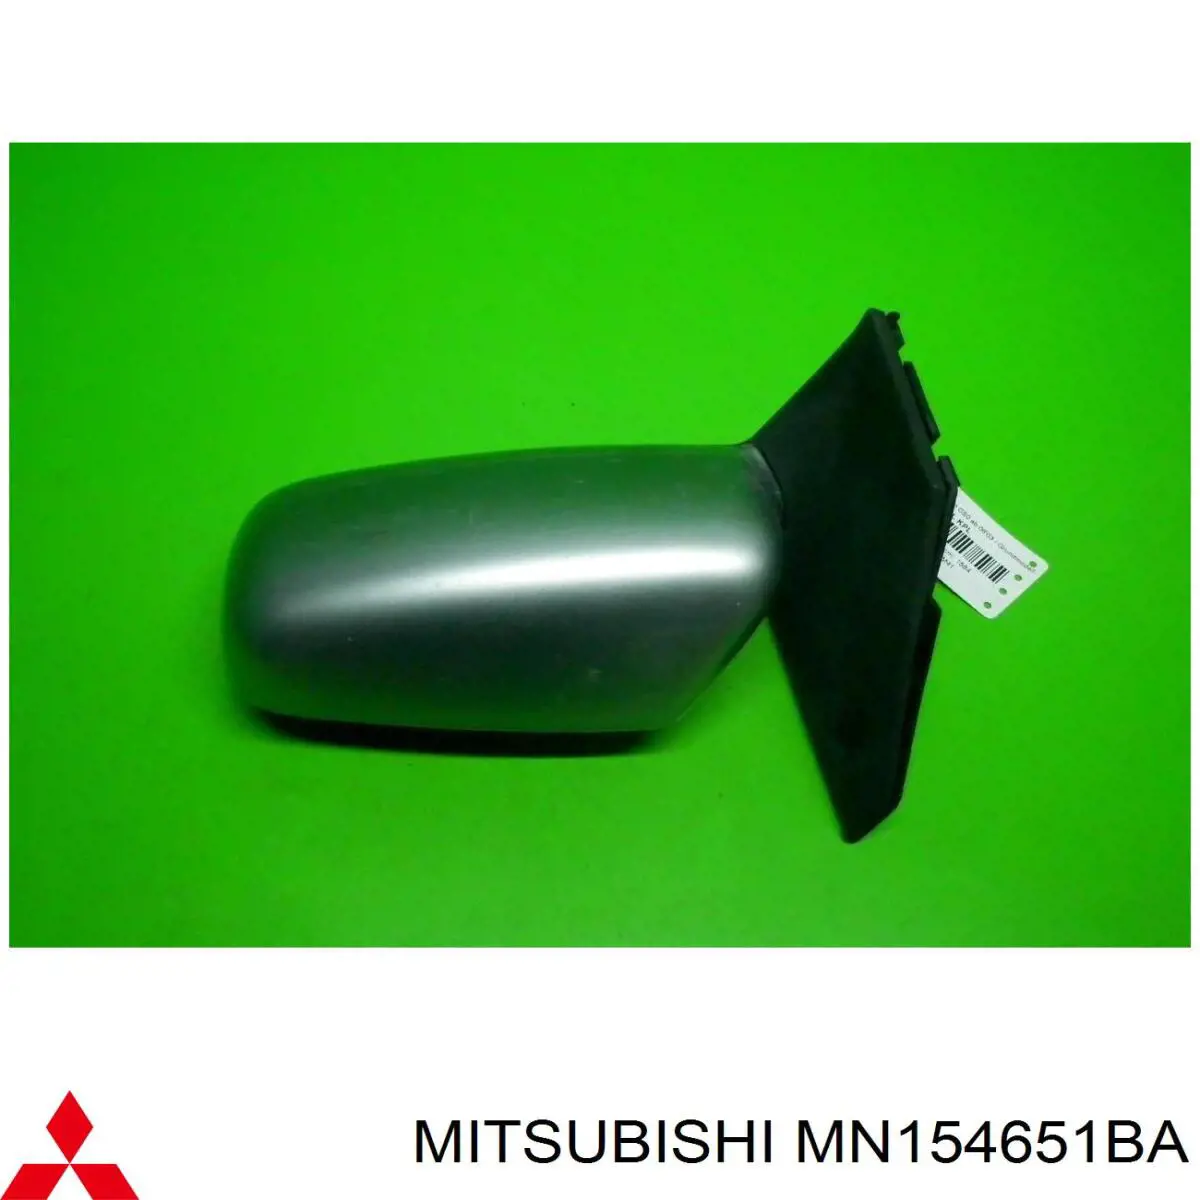 MN154651BA Mitsubishi espejo retrovisor izquierdo